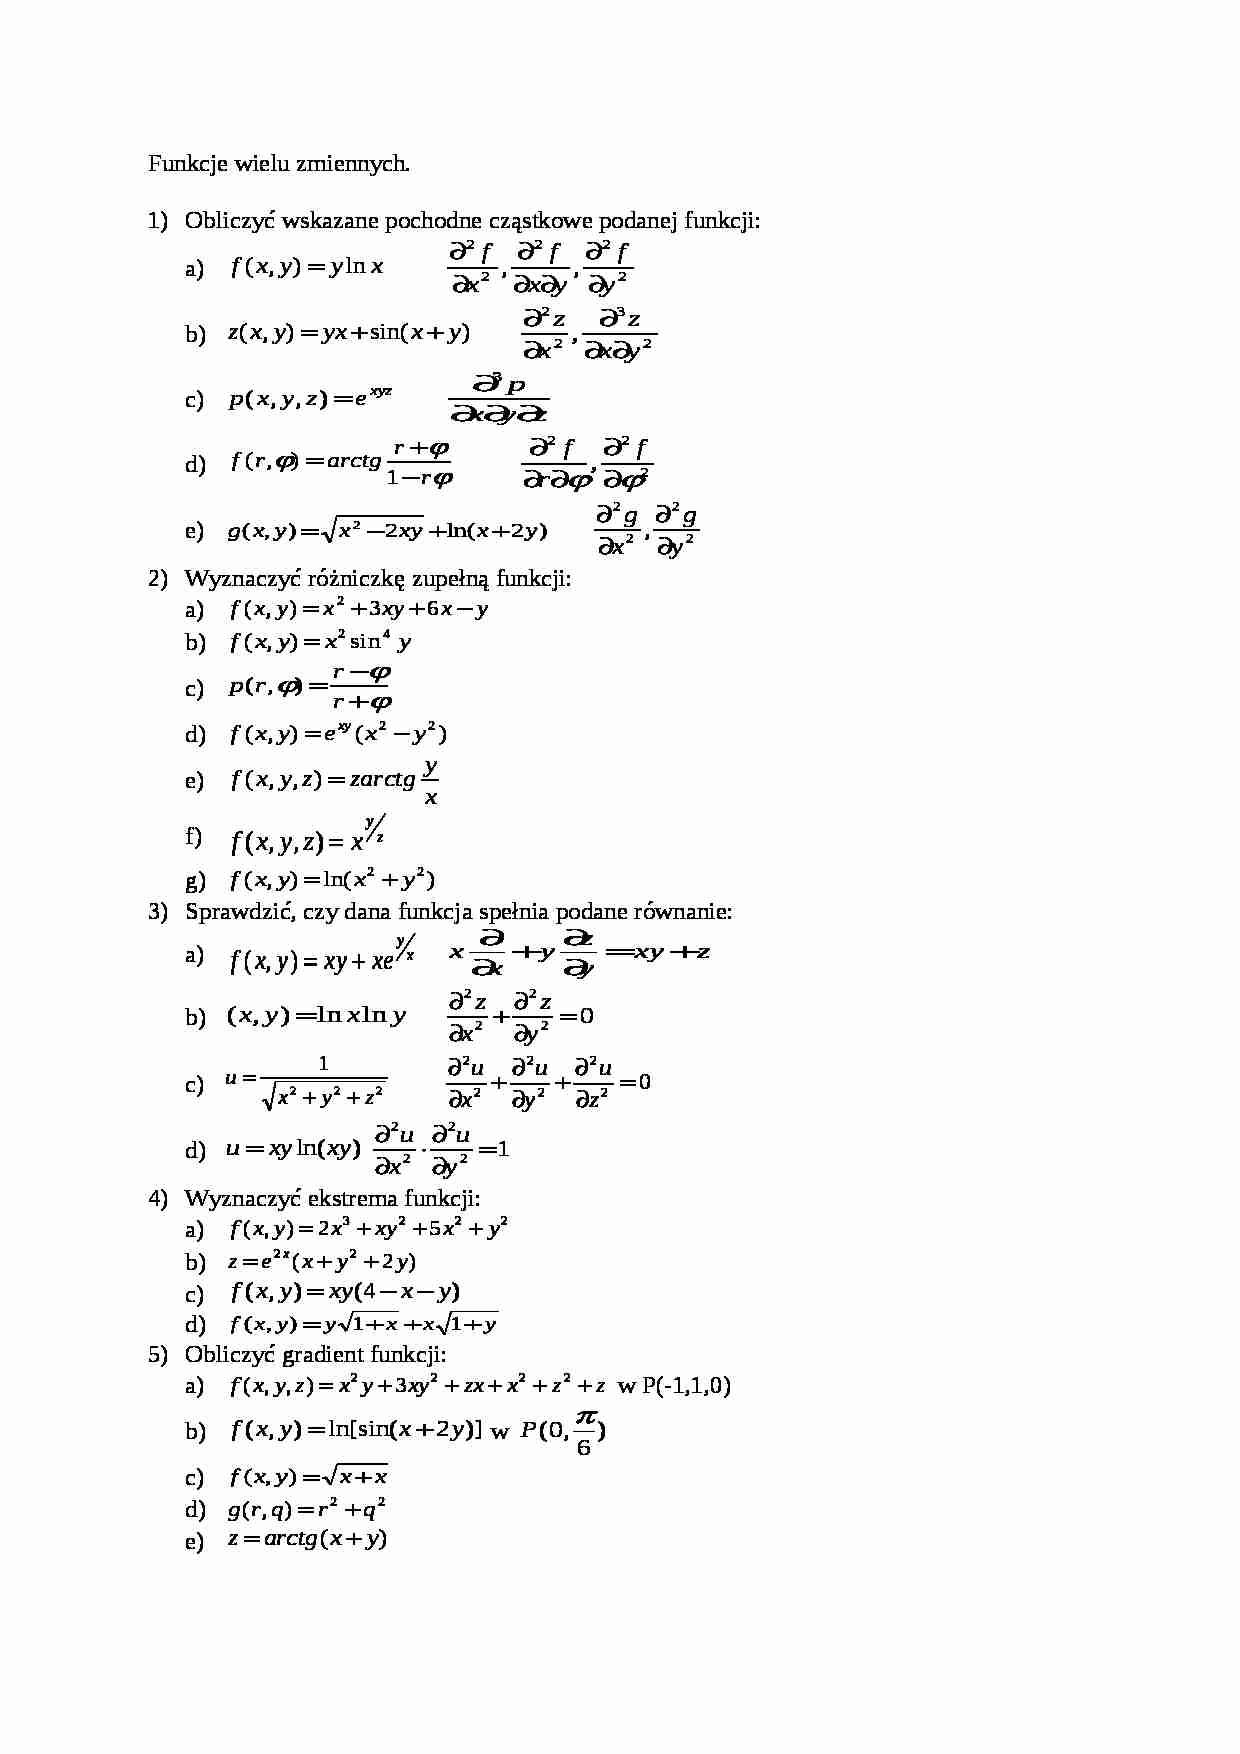 Funkcja wielu zmiennych - wykład - strona 1